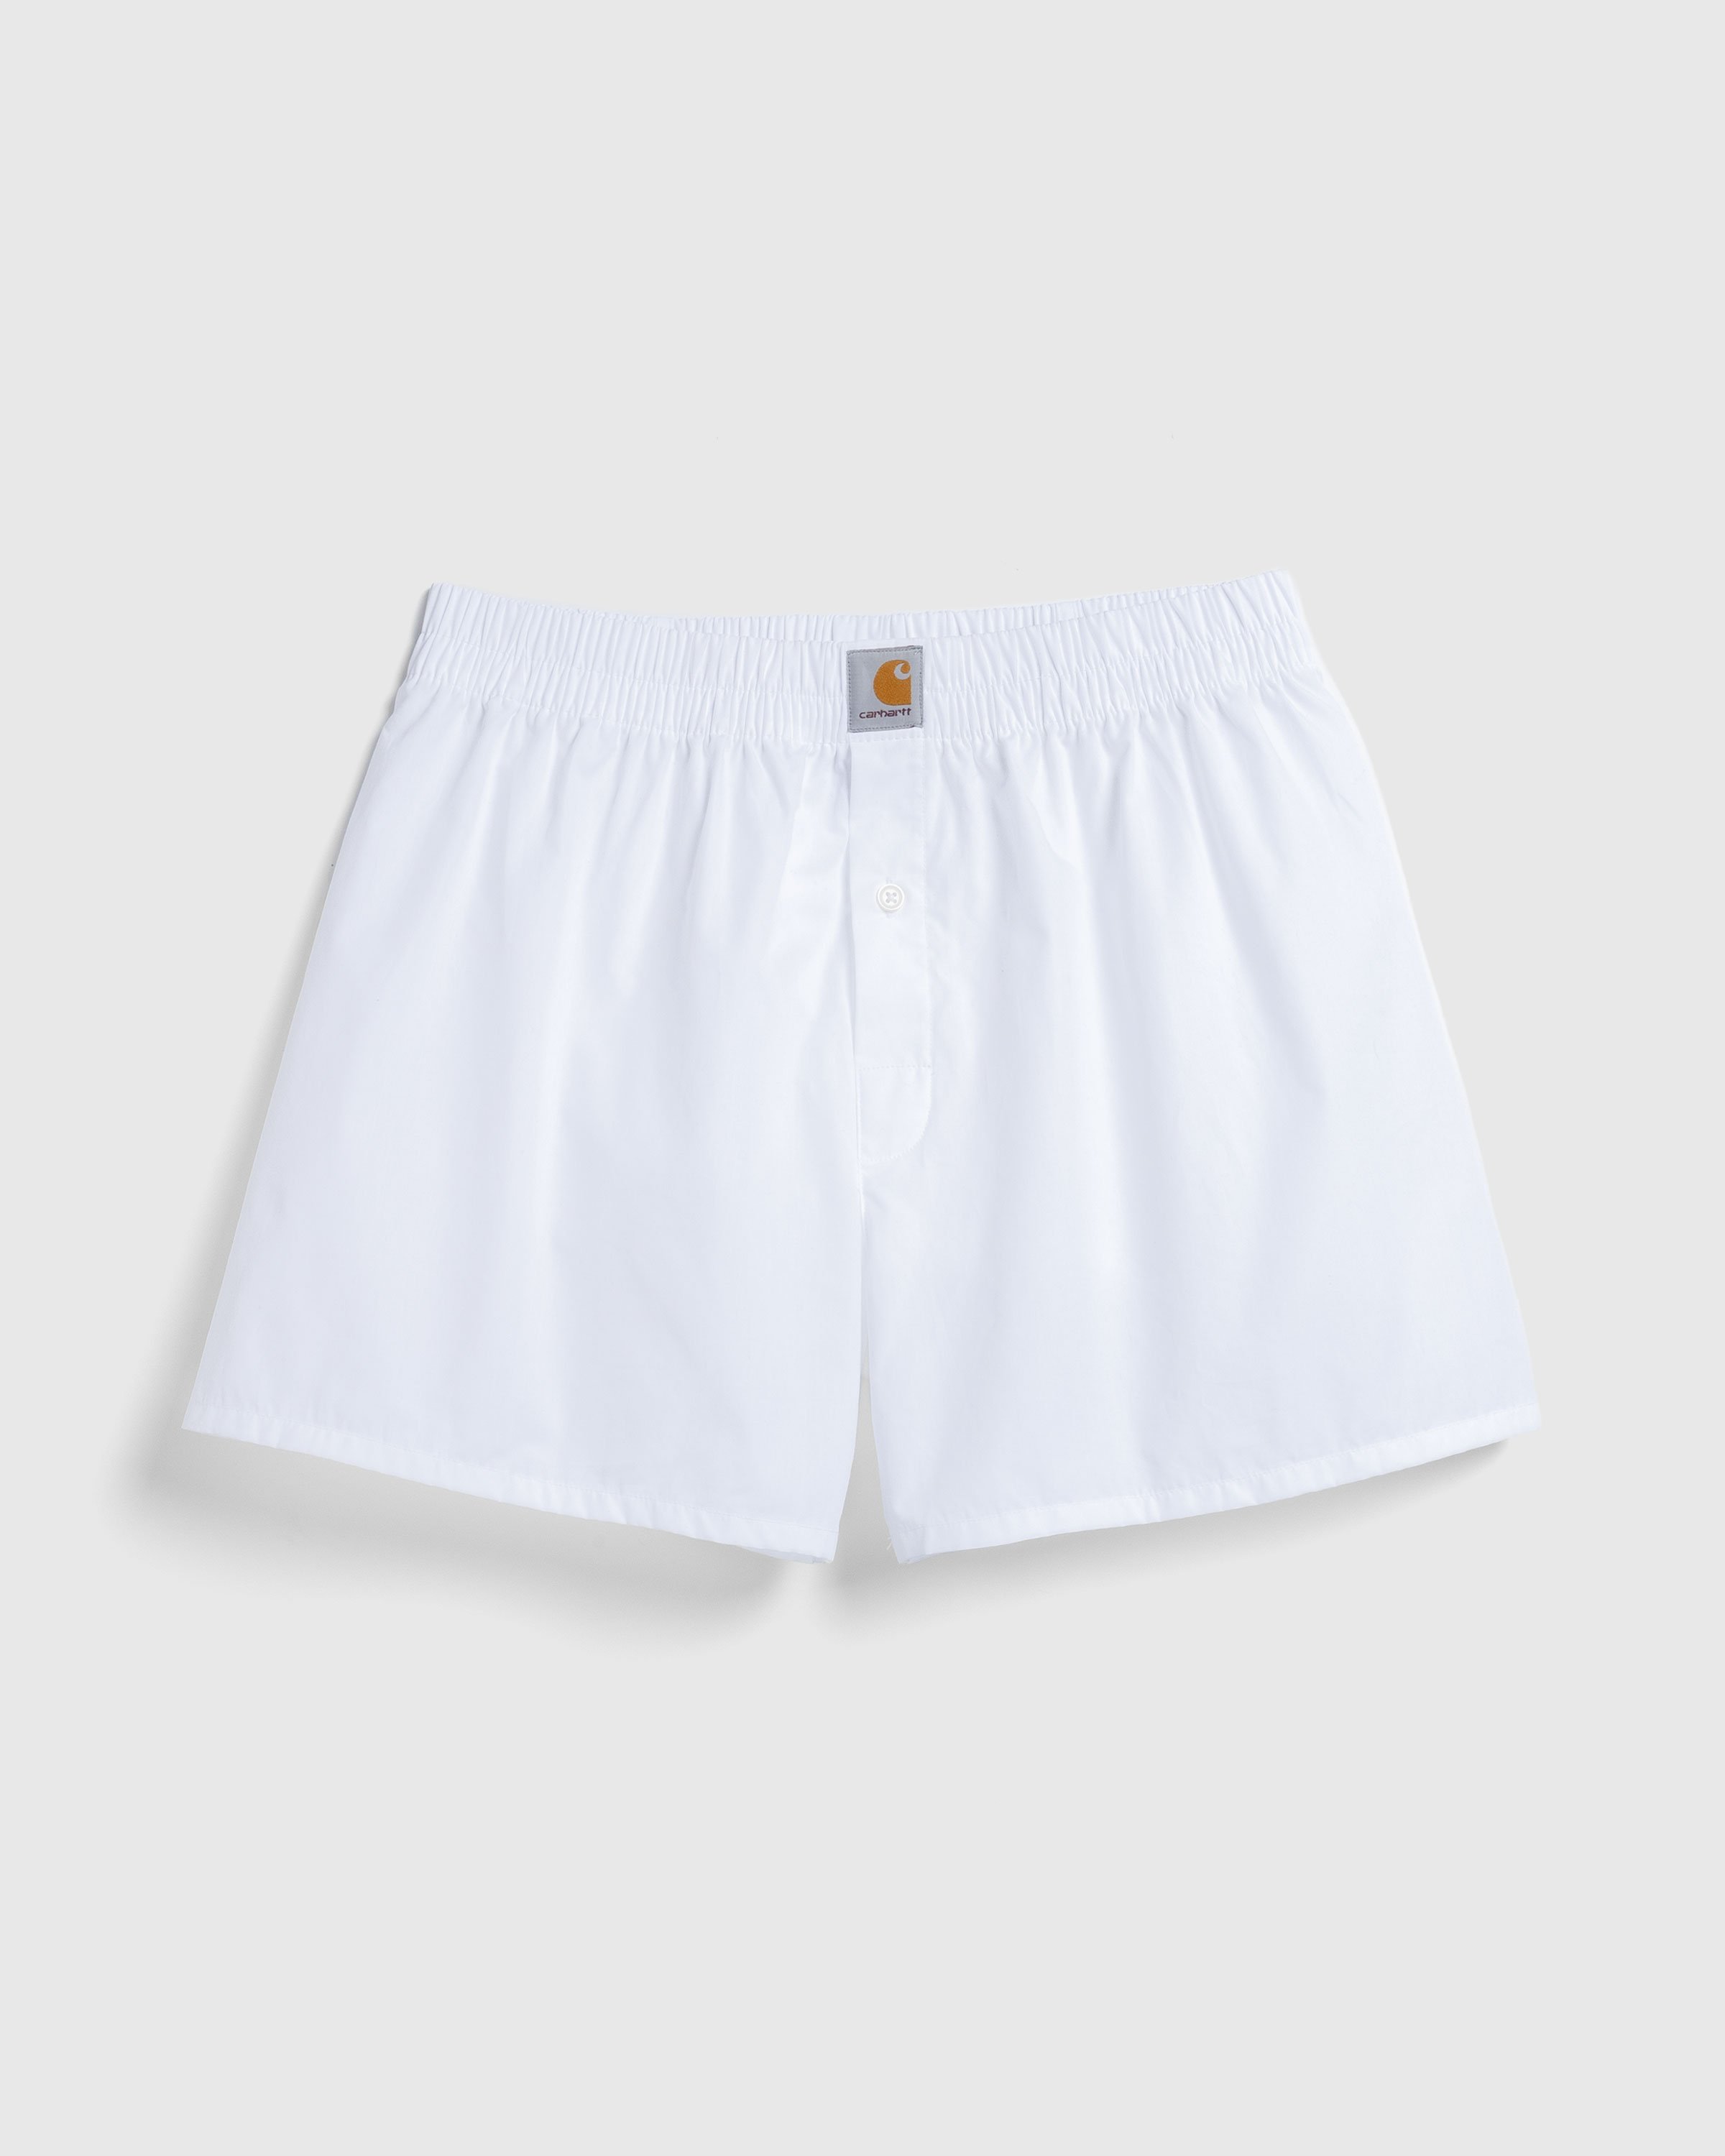 Carhartt WIP - Cotton Boxer White - Clothing - White - Image 1